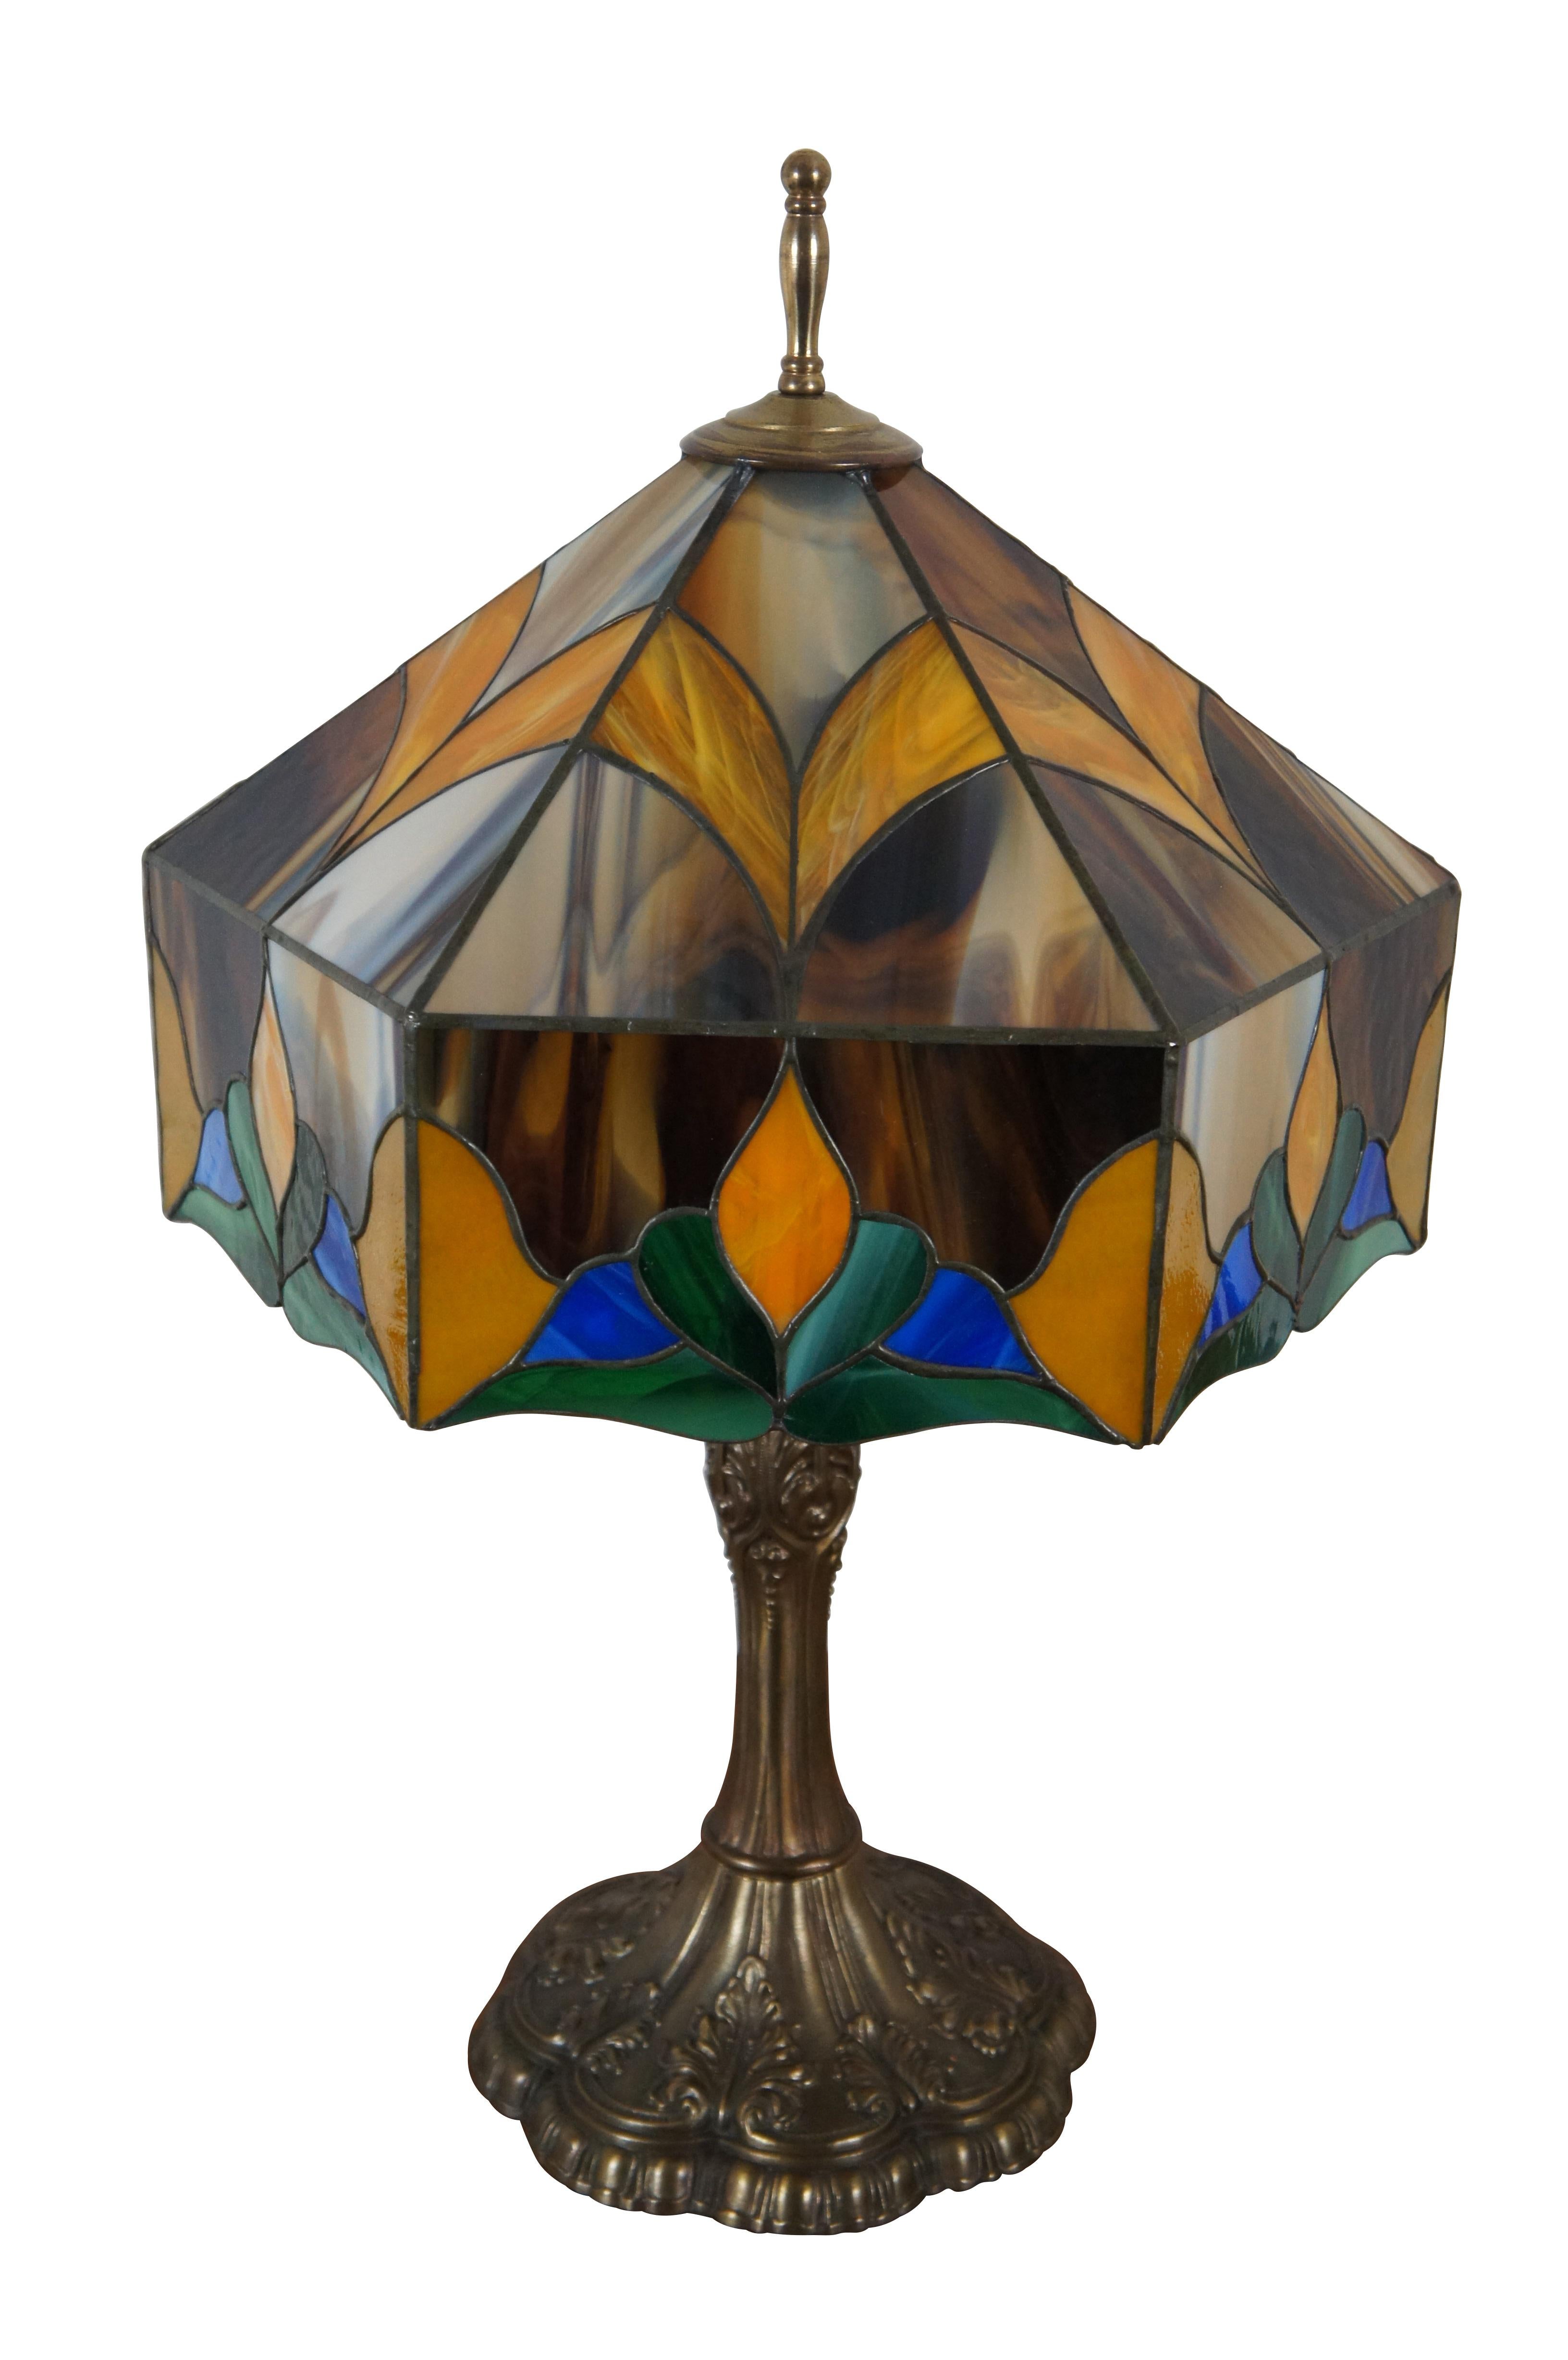 Lampe de salon à deux lumières en verre teinté de style Tiffany d'époque, de style Art of Vintage, avec un magnifique abat-jour floral abstrait composé de bleu, de vert, d'orange et de brun tortue, soutenu par une base effilée et festonnée en forme